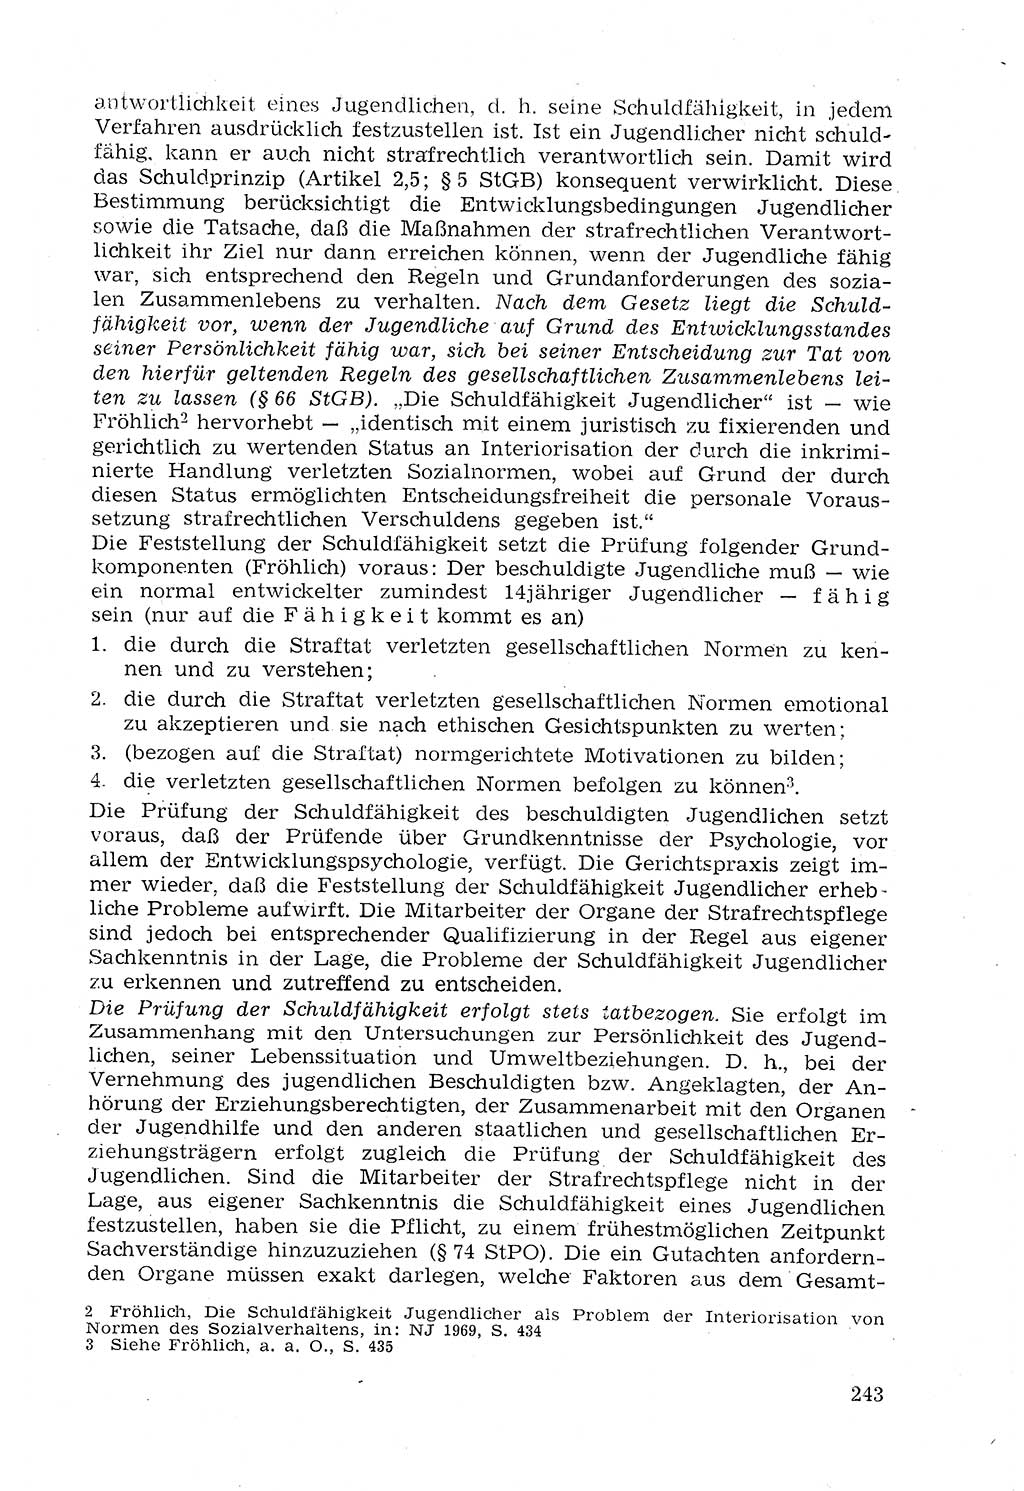 Strafprozeßrecht der DDR (Deutsche Demokratische Republik), Lehrmaterial 1969, Seite 243 (Strafprozeßr. DDR Lehrmat. 1969, S. 243)